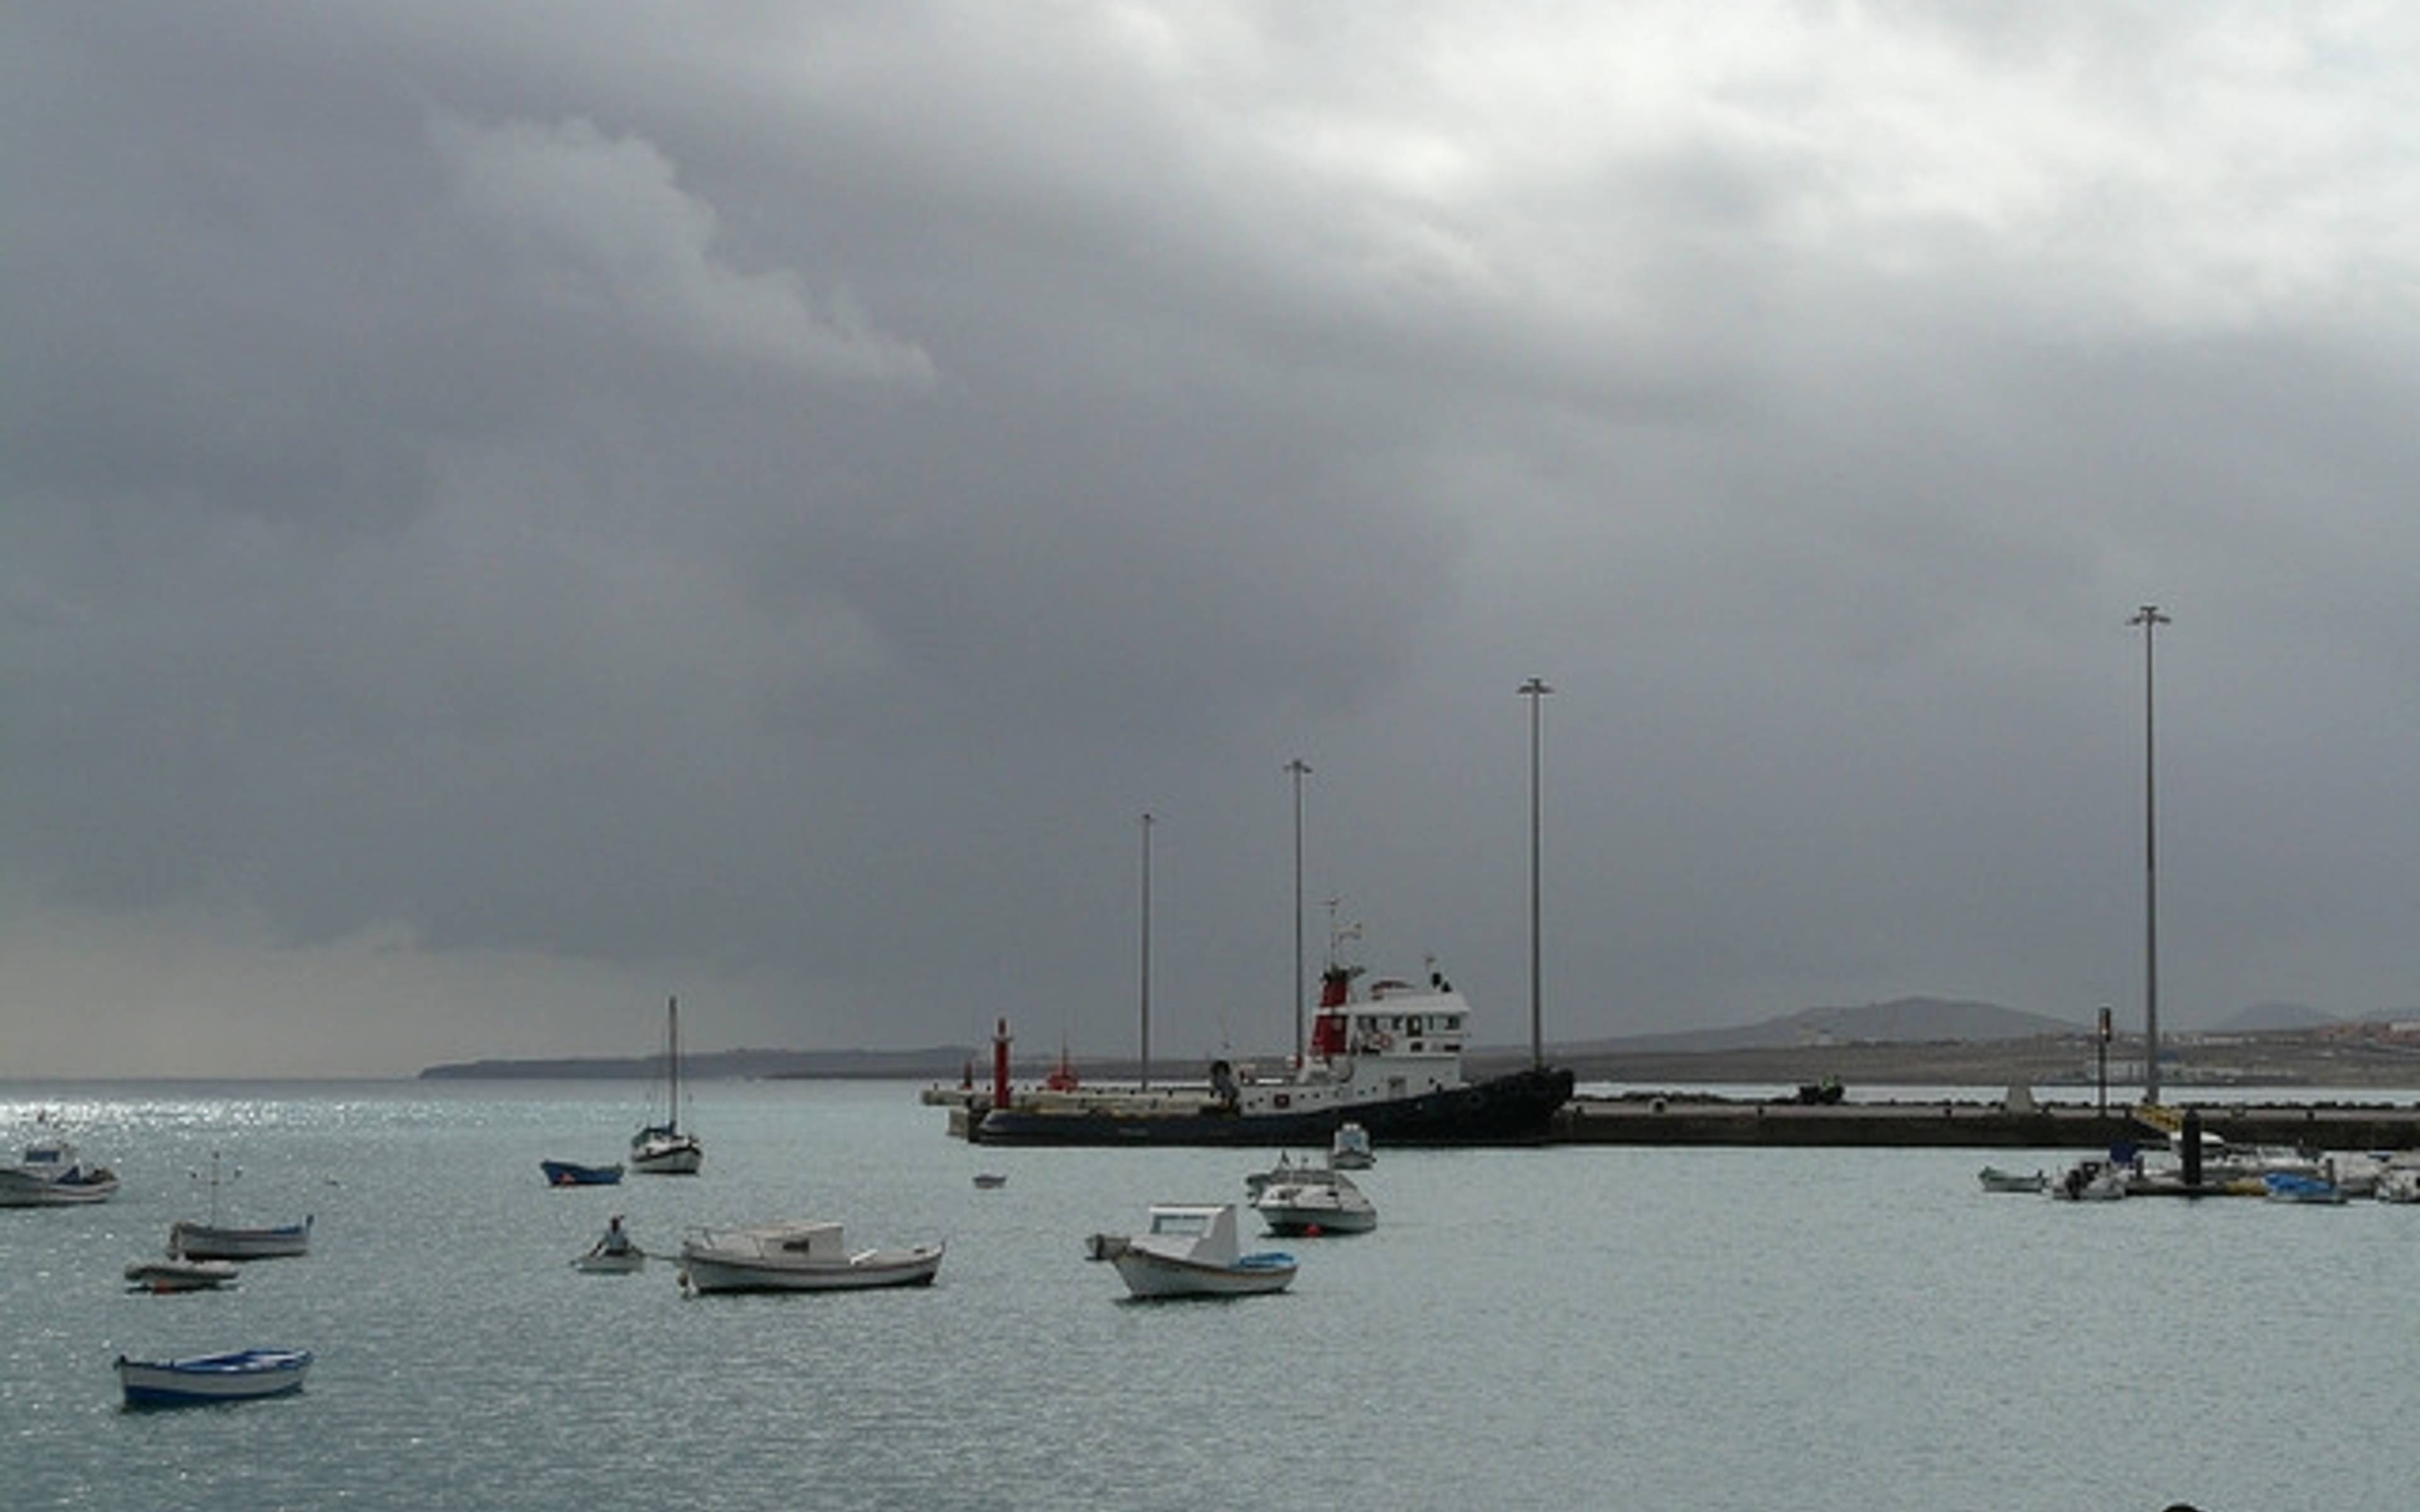 Puerto del Rosario